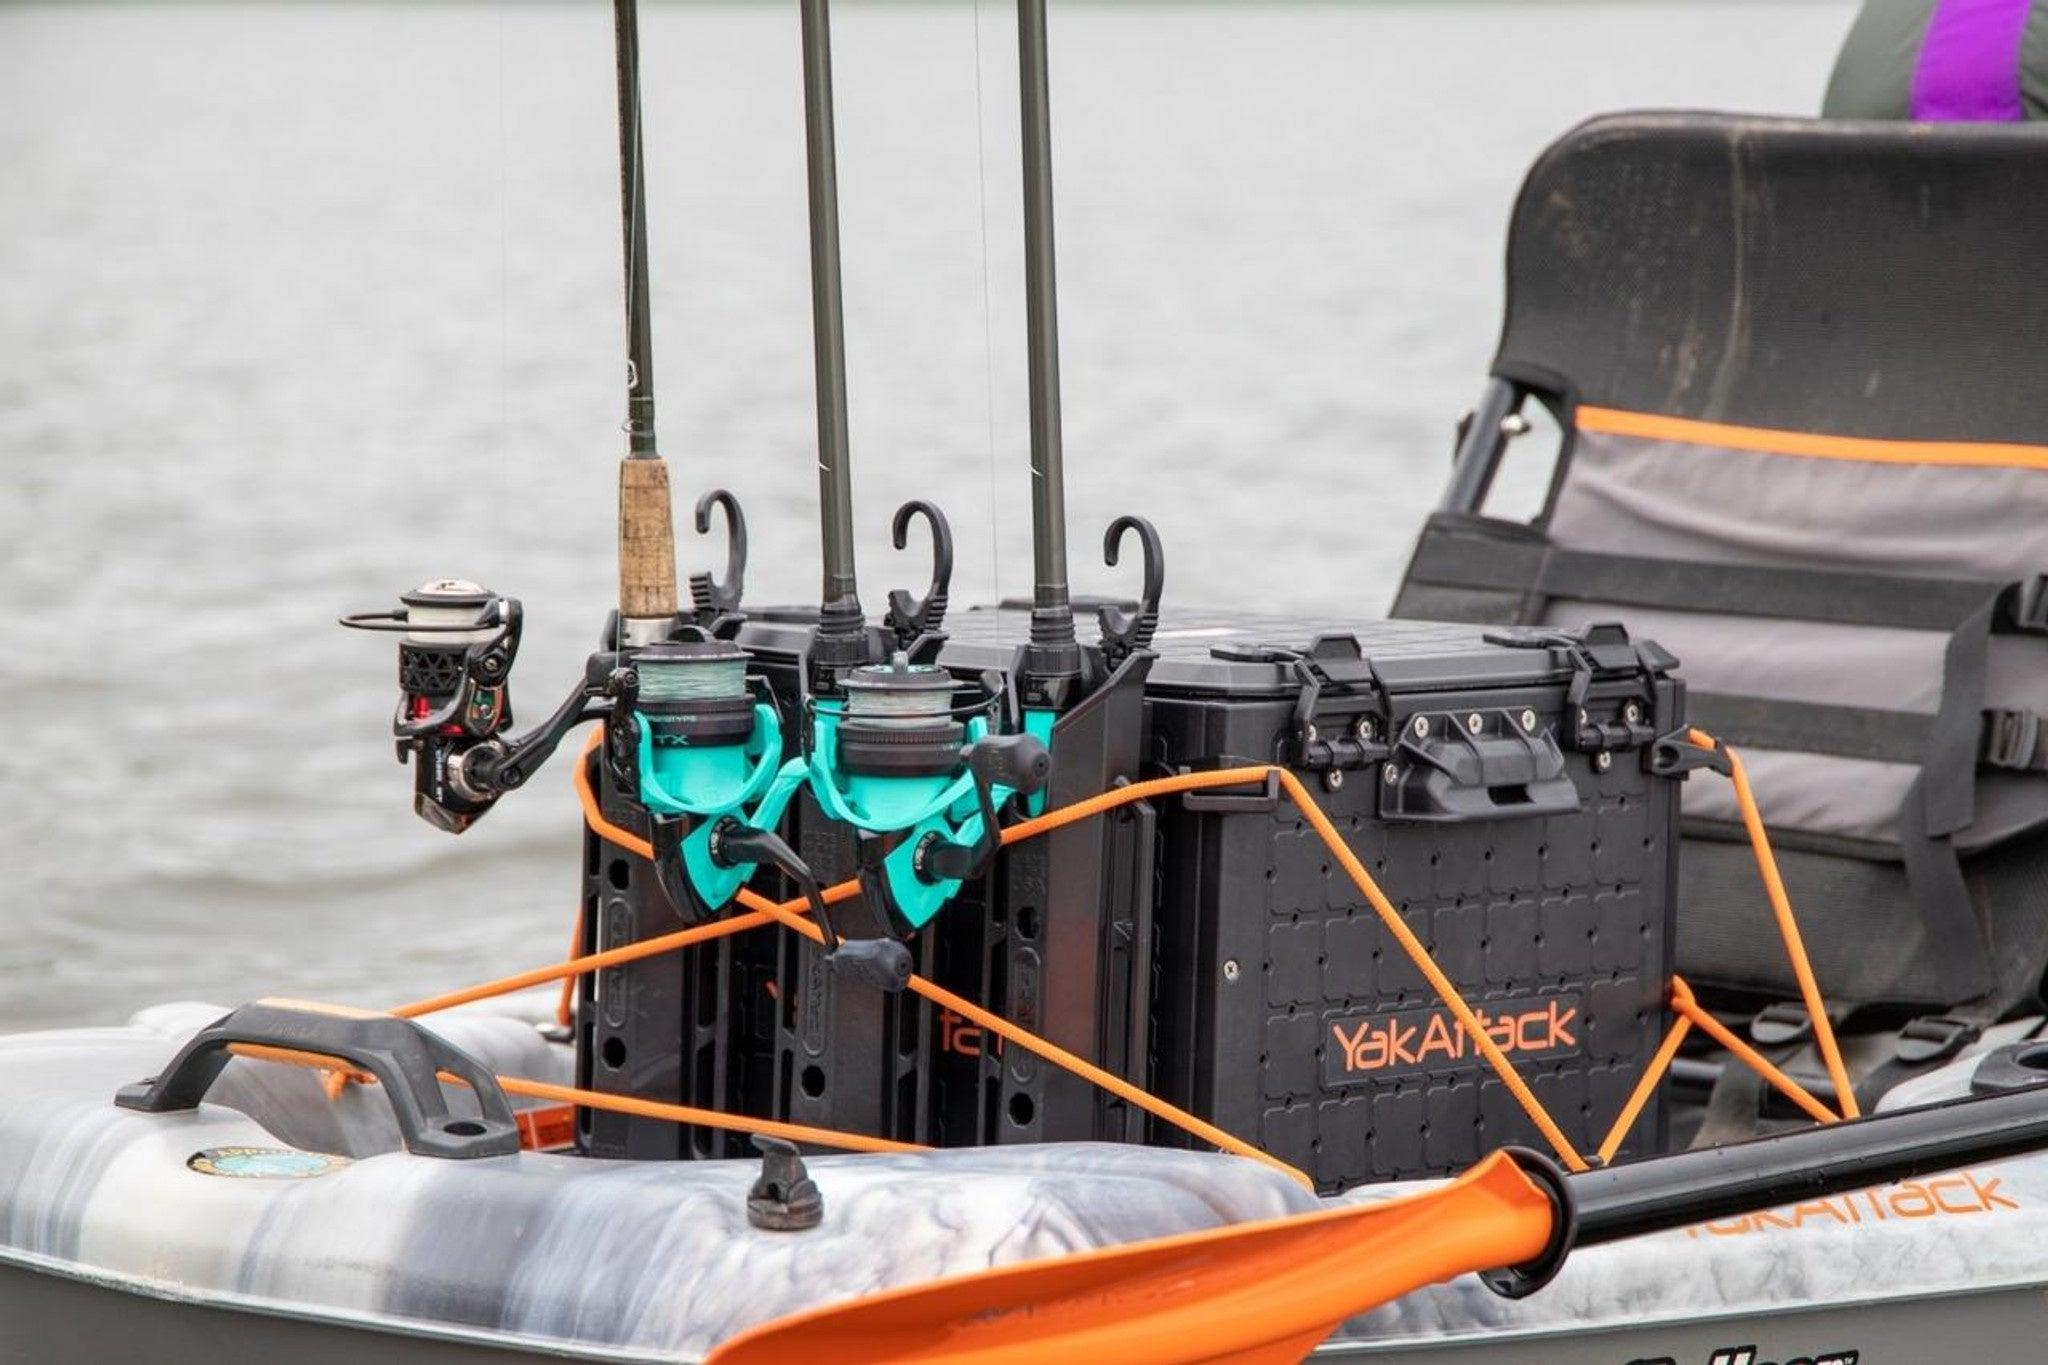 YakAttack BlackPak Pro Kayak Fishing Crate - 16 x 16